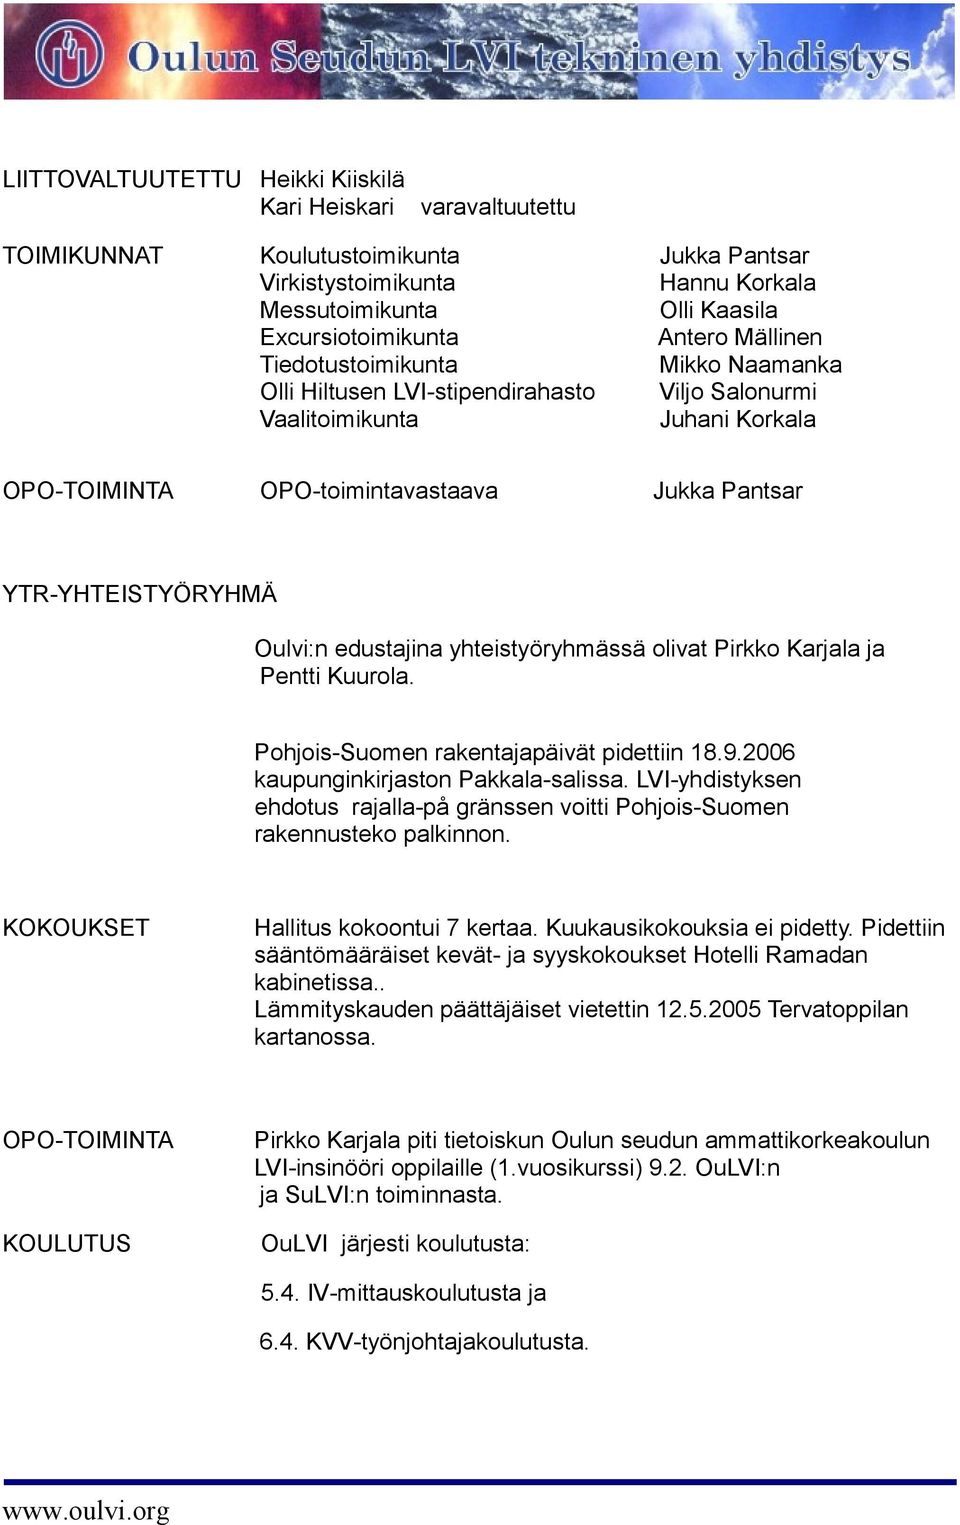 edustajina yhteistyöryhmässä olivat Pirkko Karjala ja Pentti Kuurola. Pohjois-Suomen rakentajapäivät pidettiin 18.9.2006 kaupunginkirjaston Pakkala-salissa.